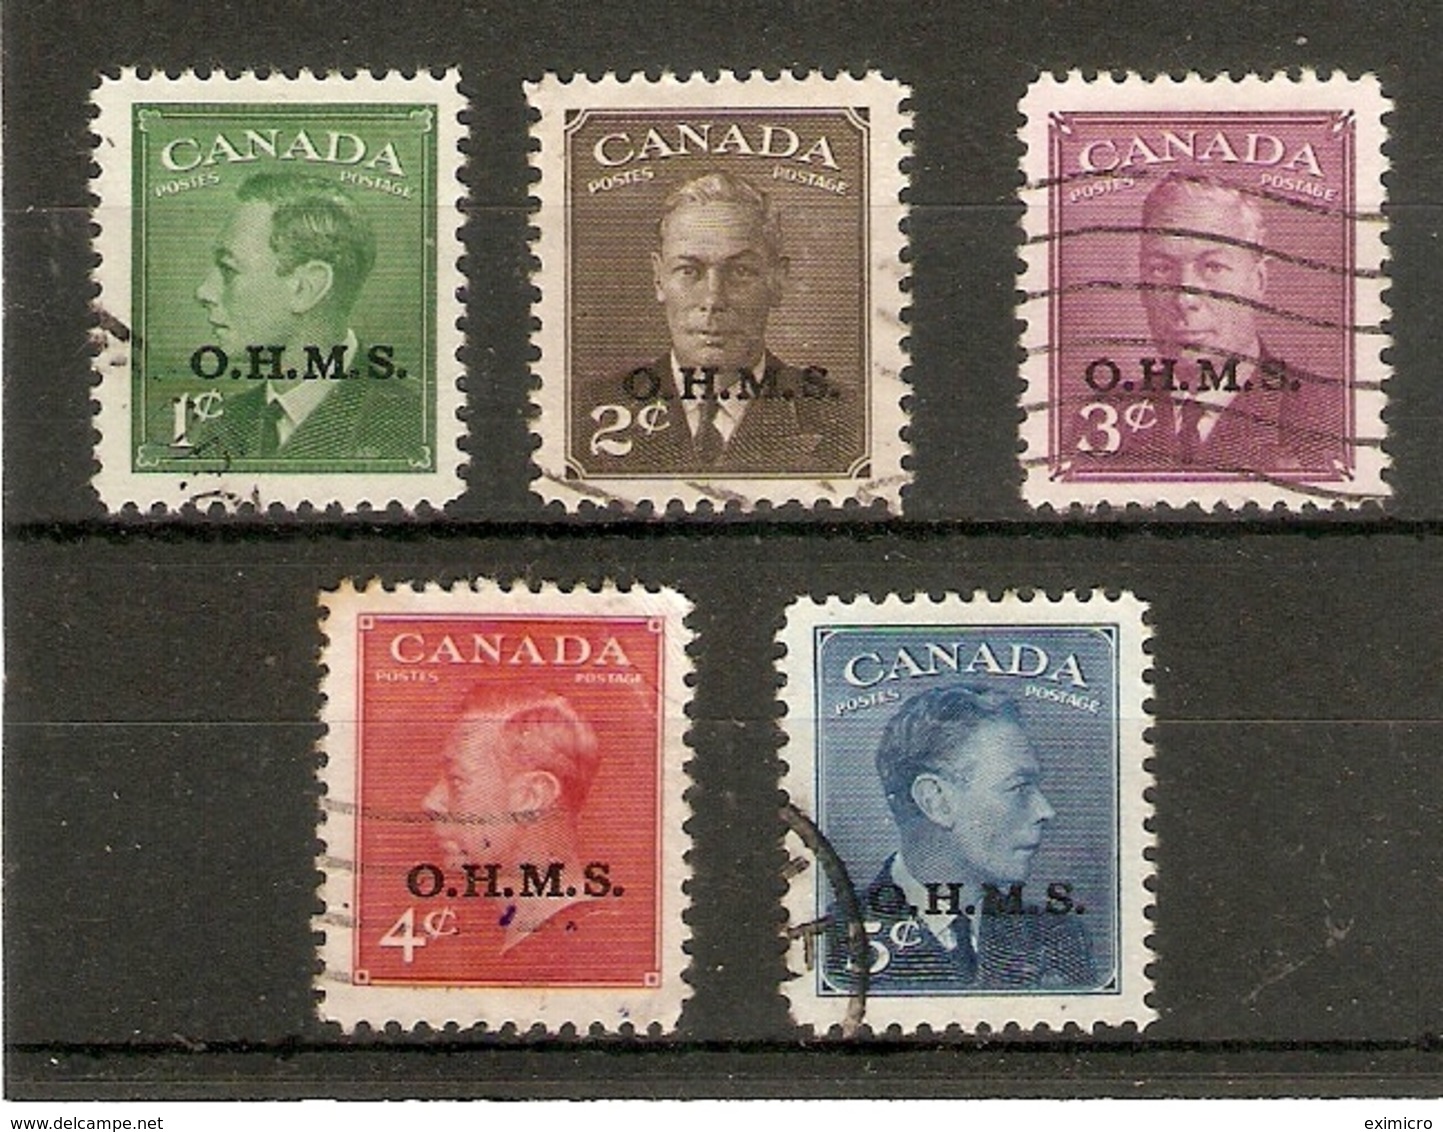 CANADA 1949  O.H.M.S. OFFICIALS SET TO 5c SG O172/O176 FINE USED Cat £19+ - Overprinted